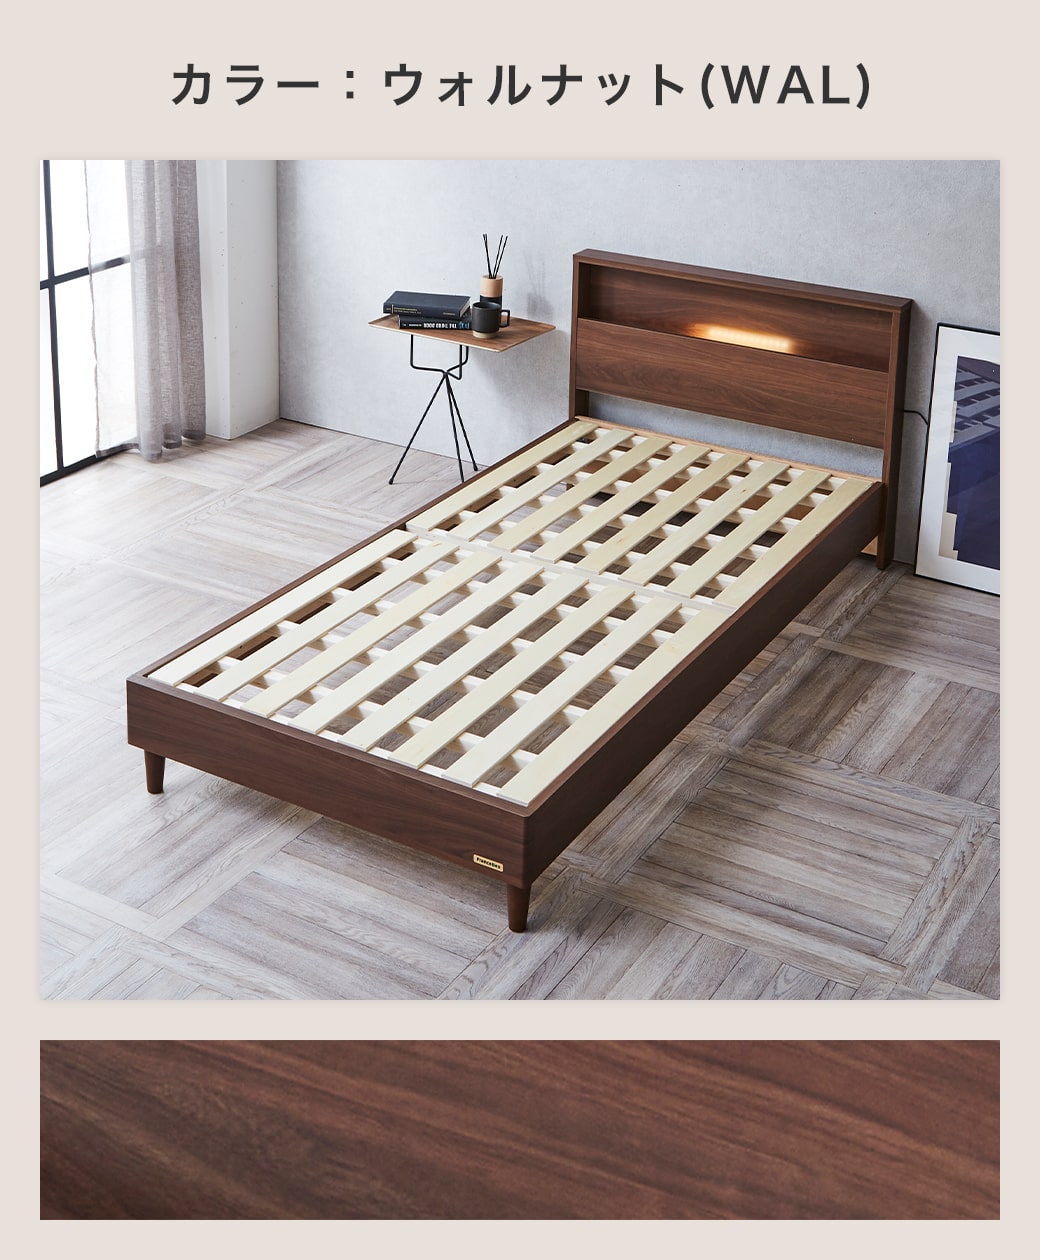 すのこベッド ベッド フランスベッド コンセント 棚付き LED照明 すのこ 日本製 シングル francebed  マルチラススーパースプリングマットレス